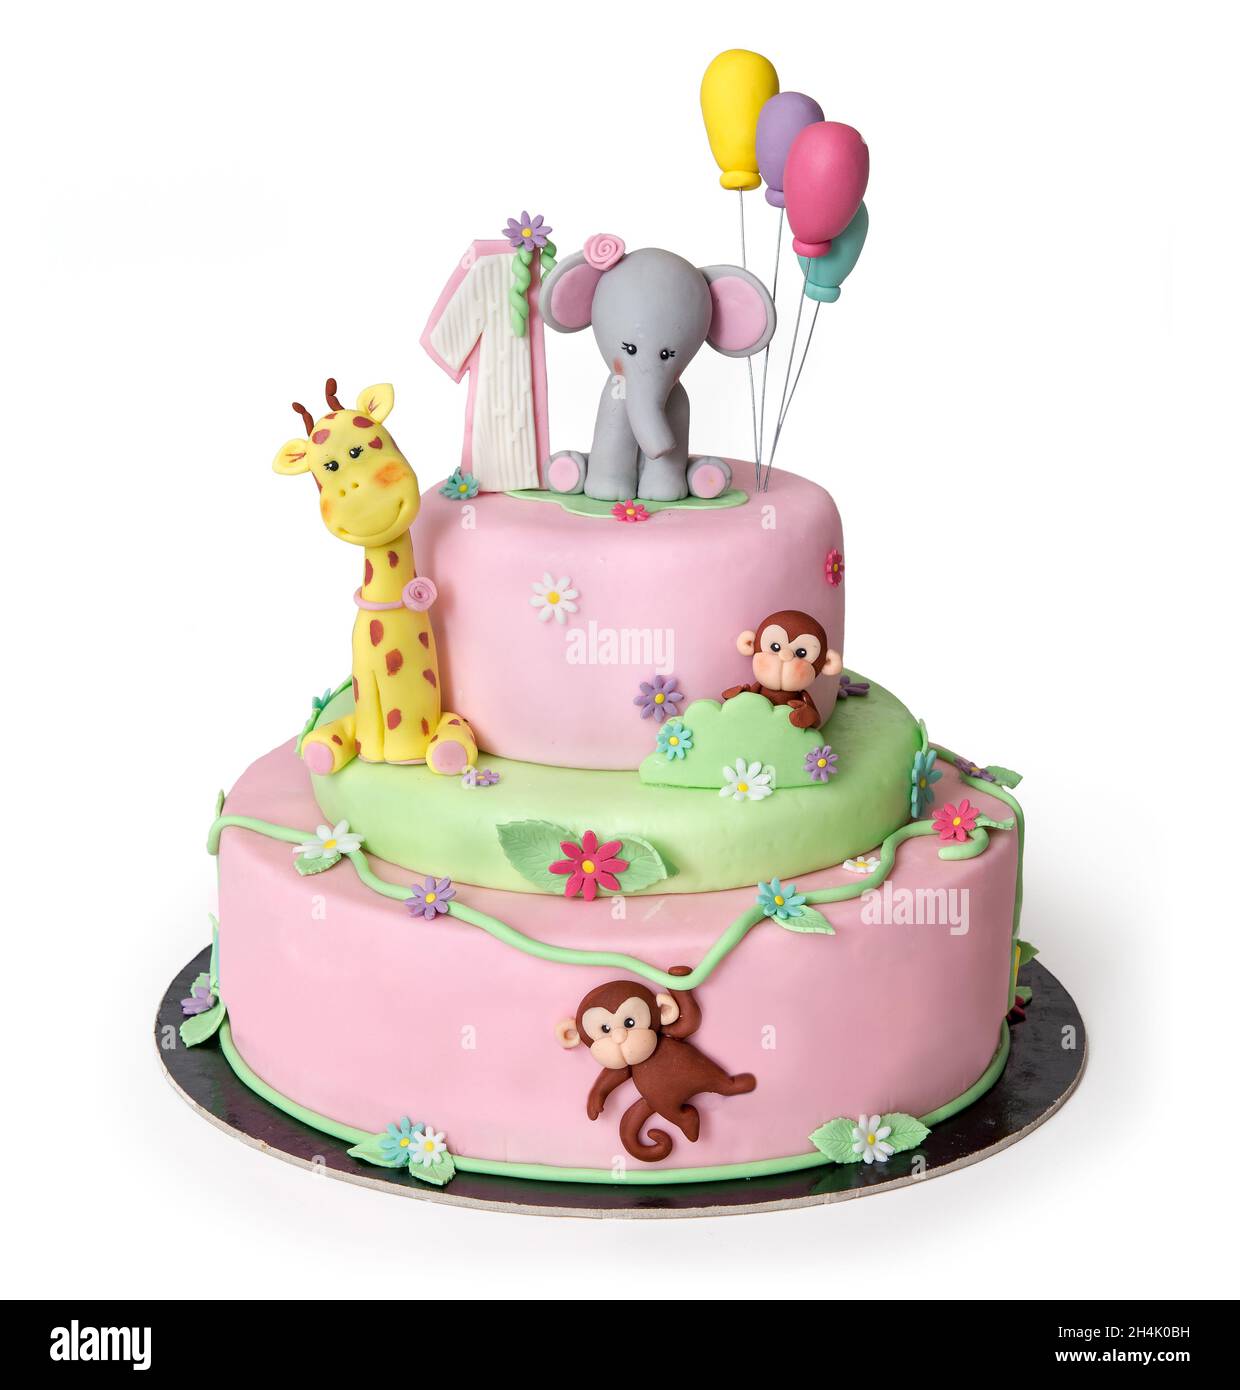 magnifique gâteau d'anniversaire rose isolé sur fond blanc - décoré avec des animaux de la jungle : éléphant, girafe et singe Banque D'Images